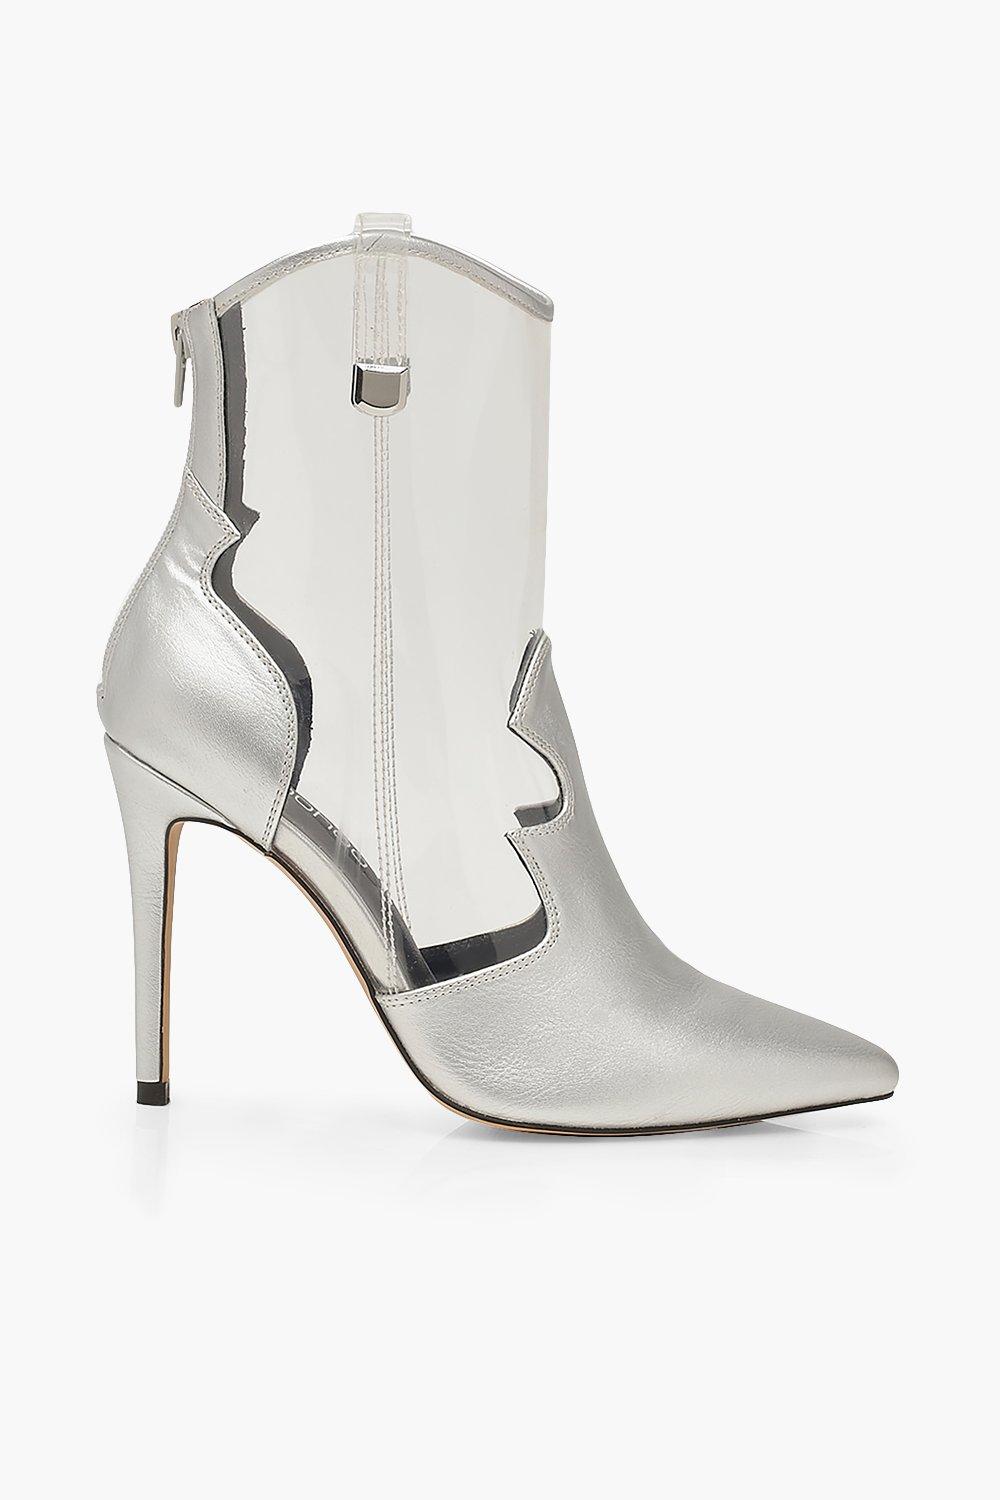 silver heels boohoo